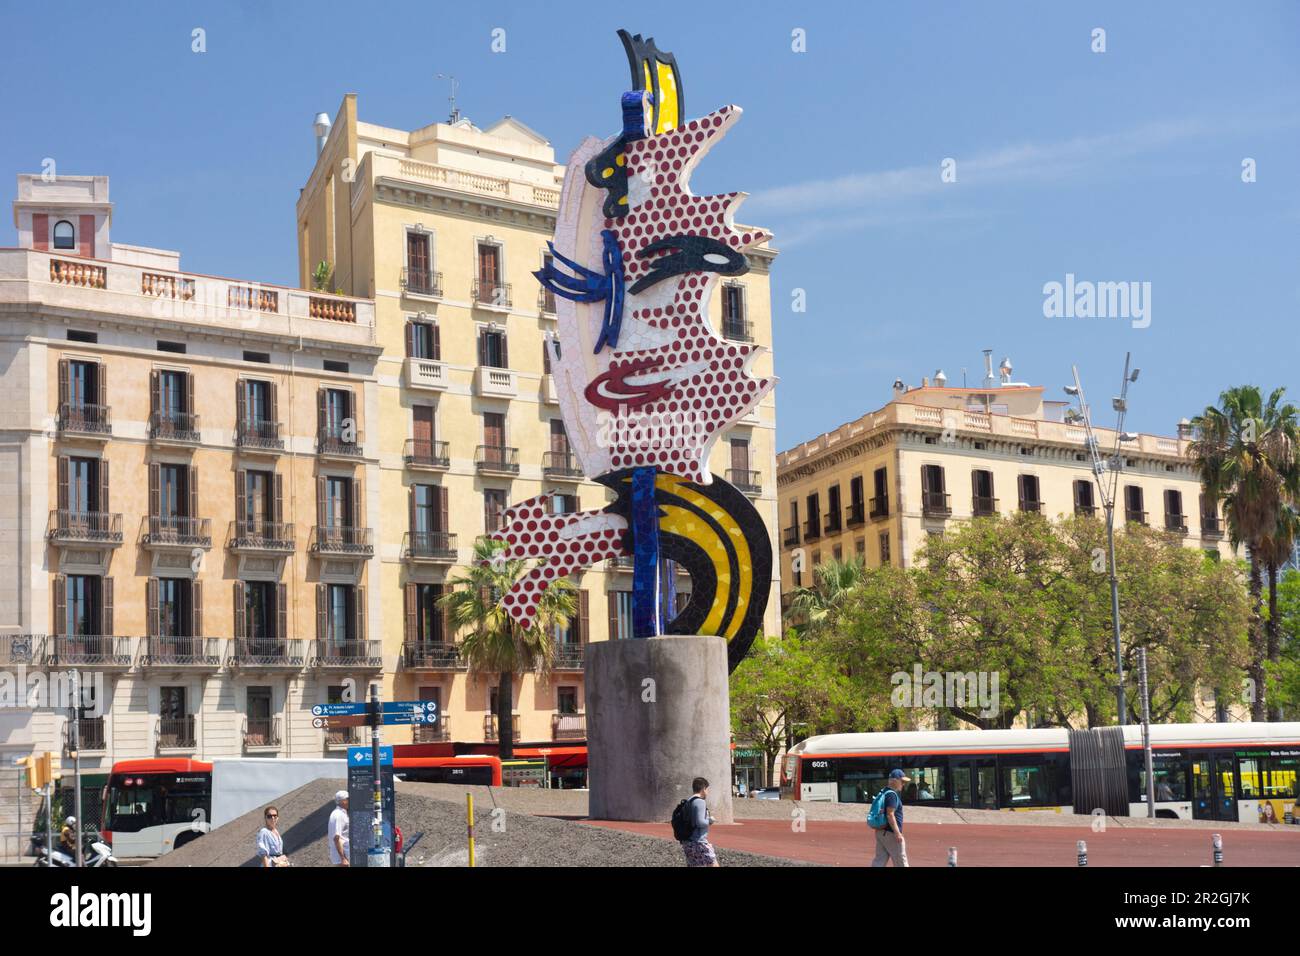 Lichtenstein-Skulptur für die Olympischen Sommerspiele 92 in Barcelona, Spanien. Mit dem Titel "der Kopf von Barcelona". Stockfoto